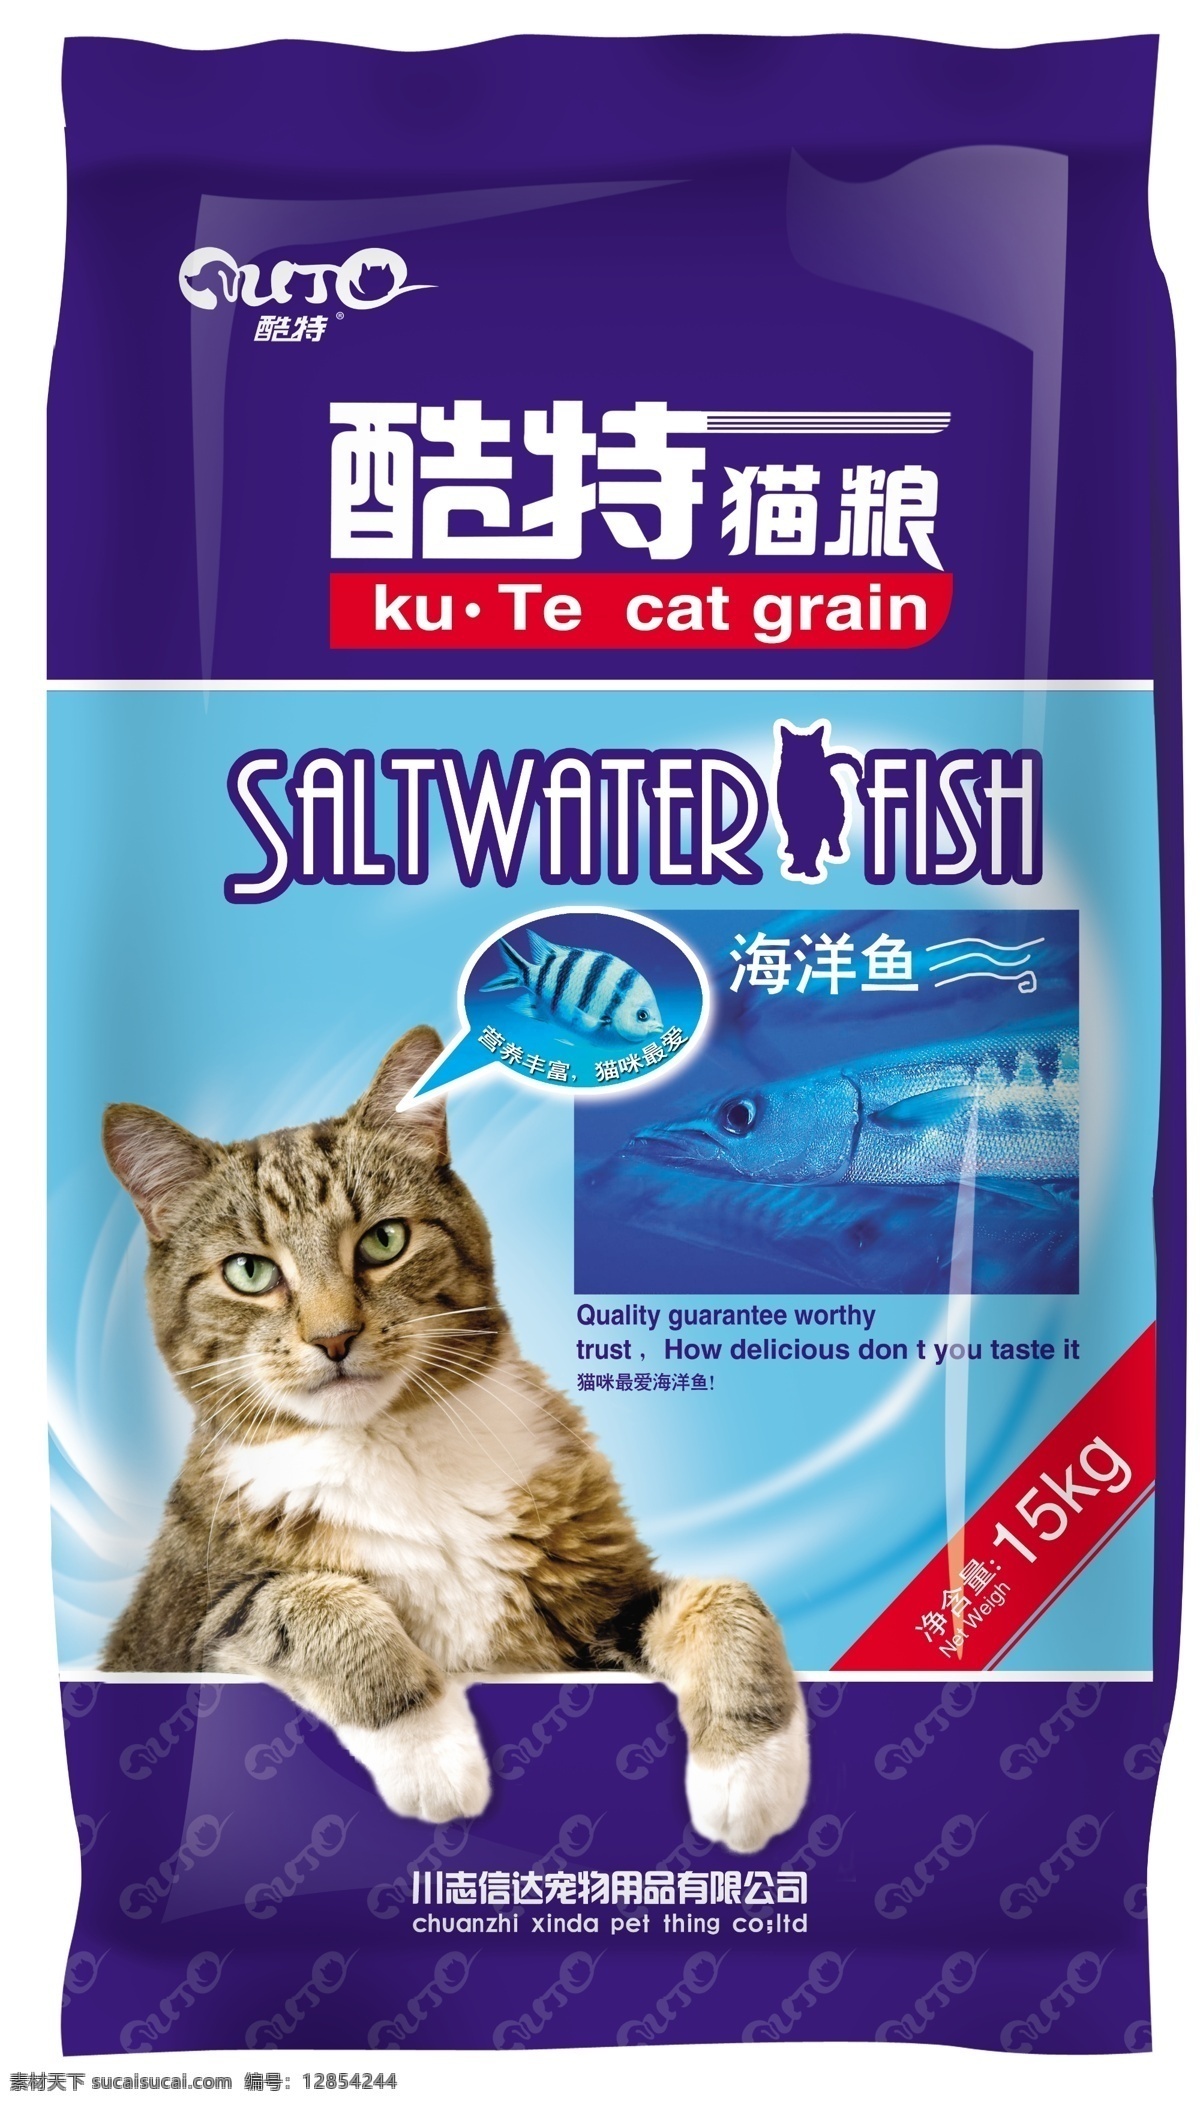 猫粮 包装袋 猫粮包装 宠物食品 包装 包装设计 广告设计模板 源文件